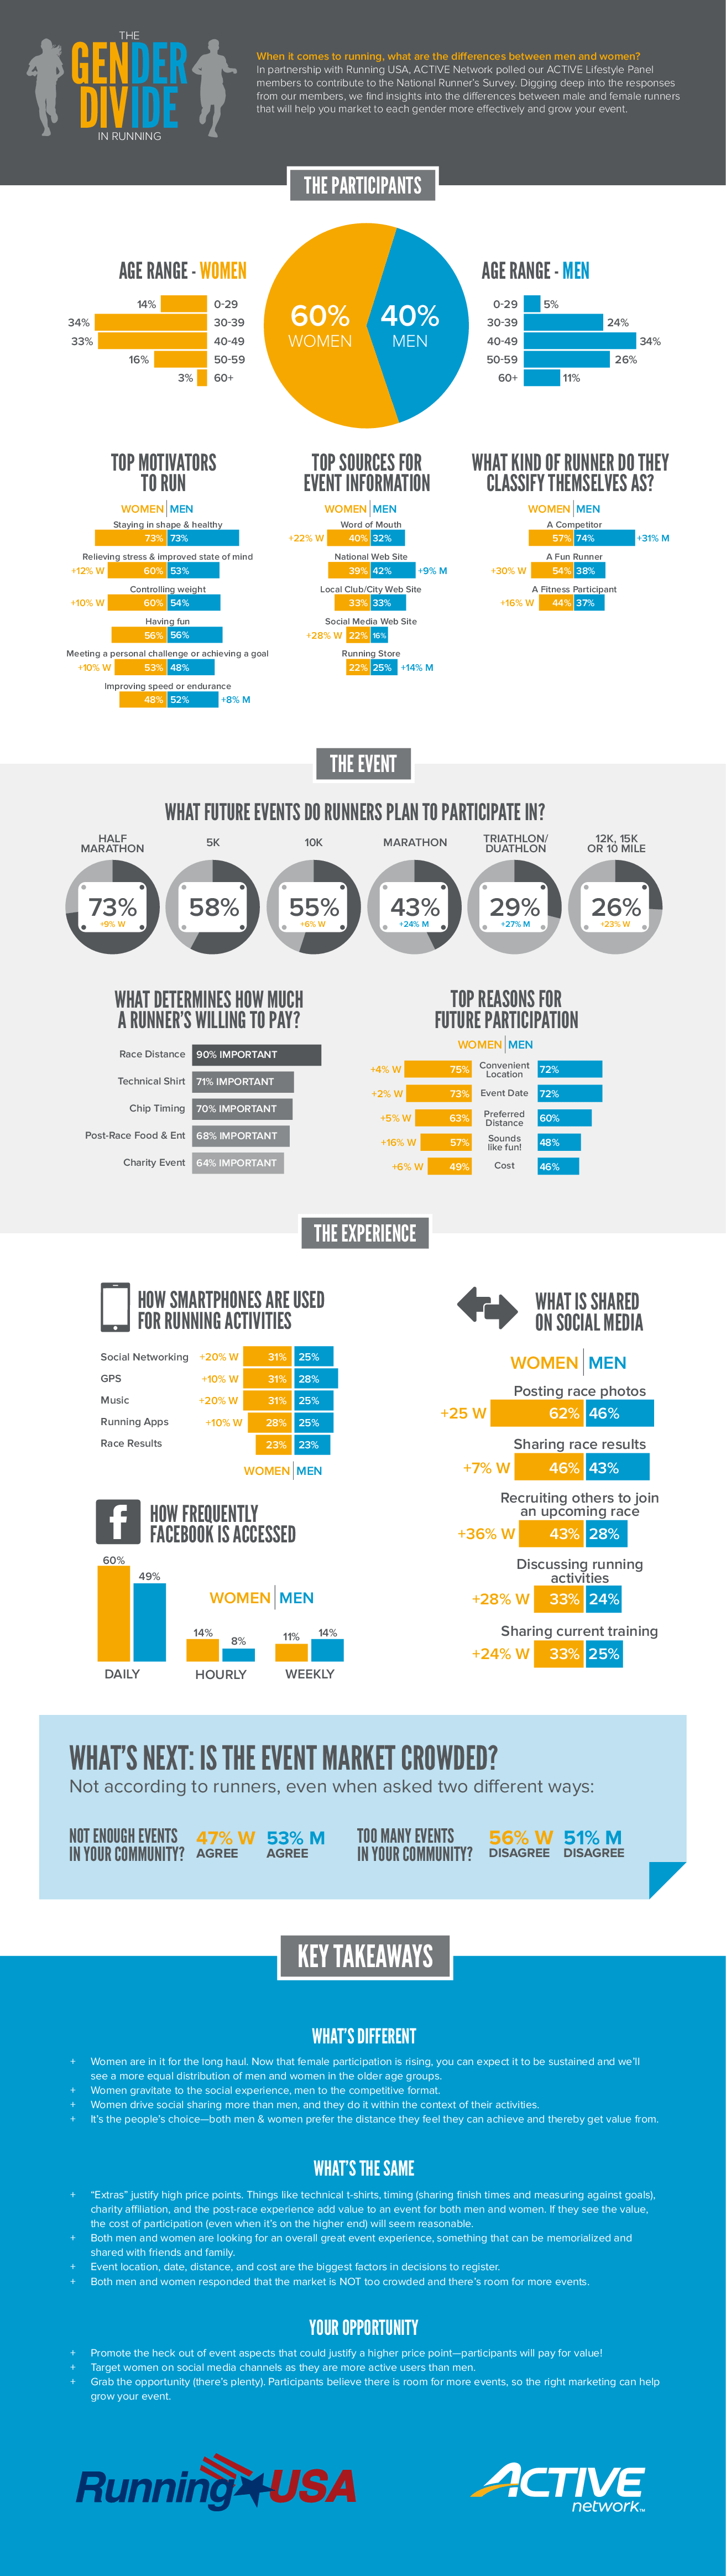 Gender-Divide-Infographic.1